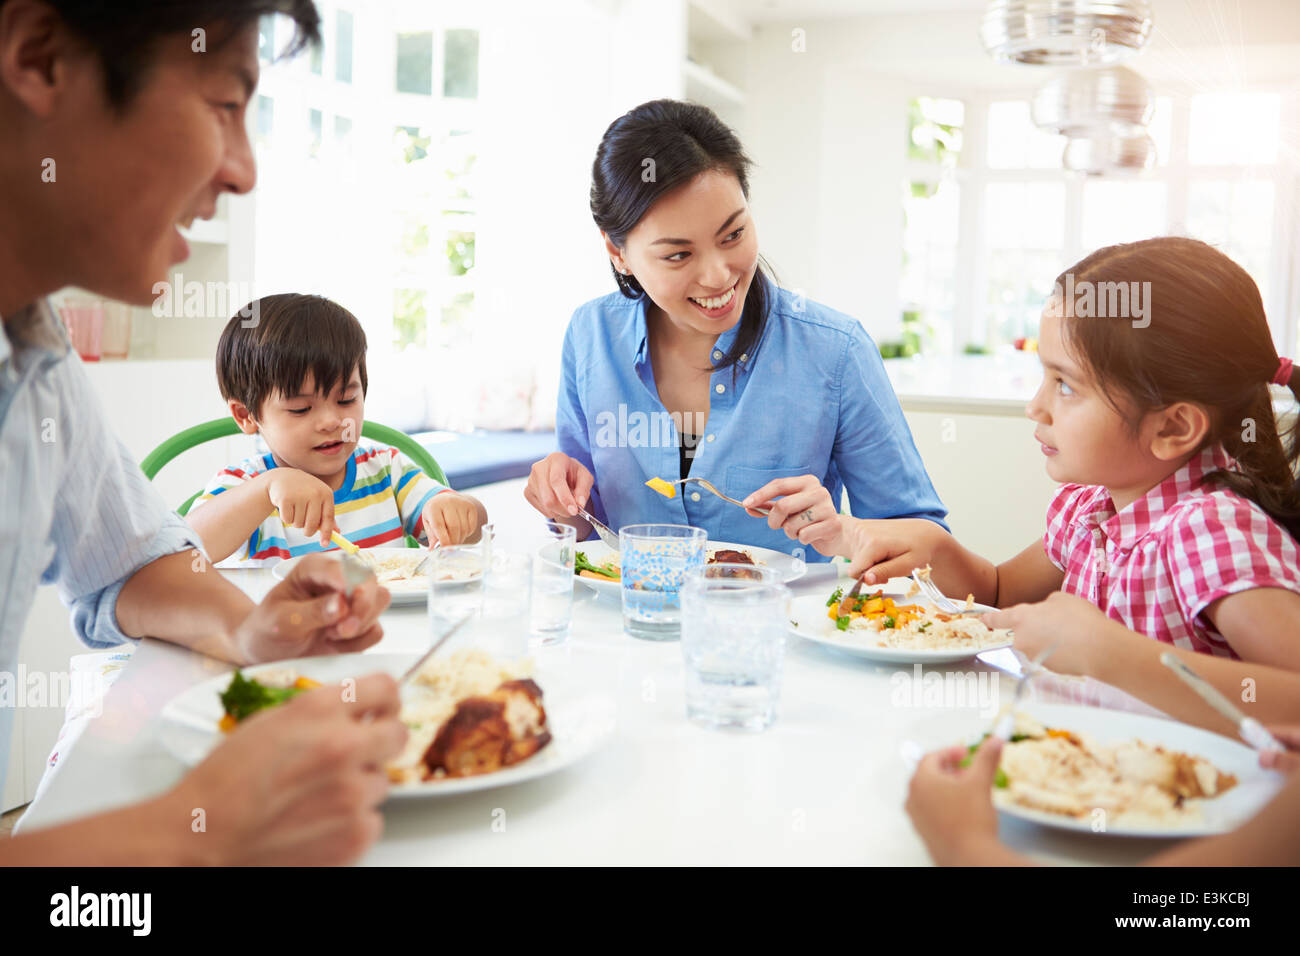 Famiglia asiatica seduta a tavola a mangiare mangiare insieme Foto Stock